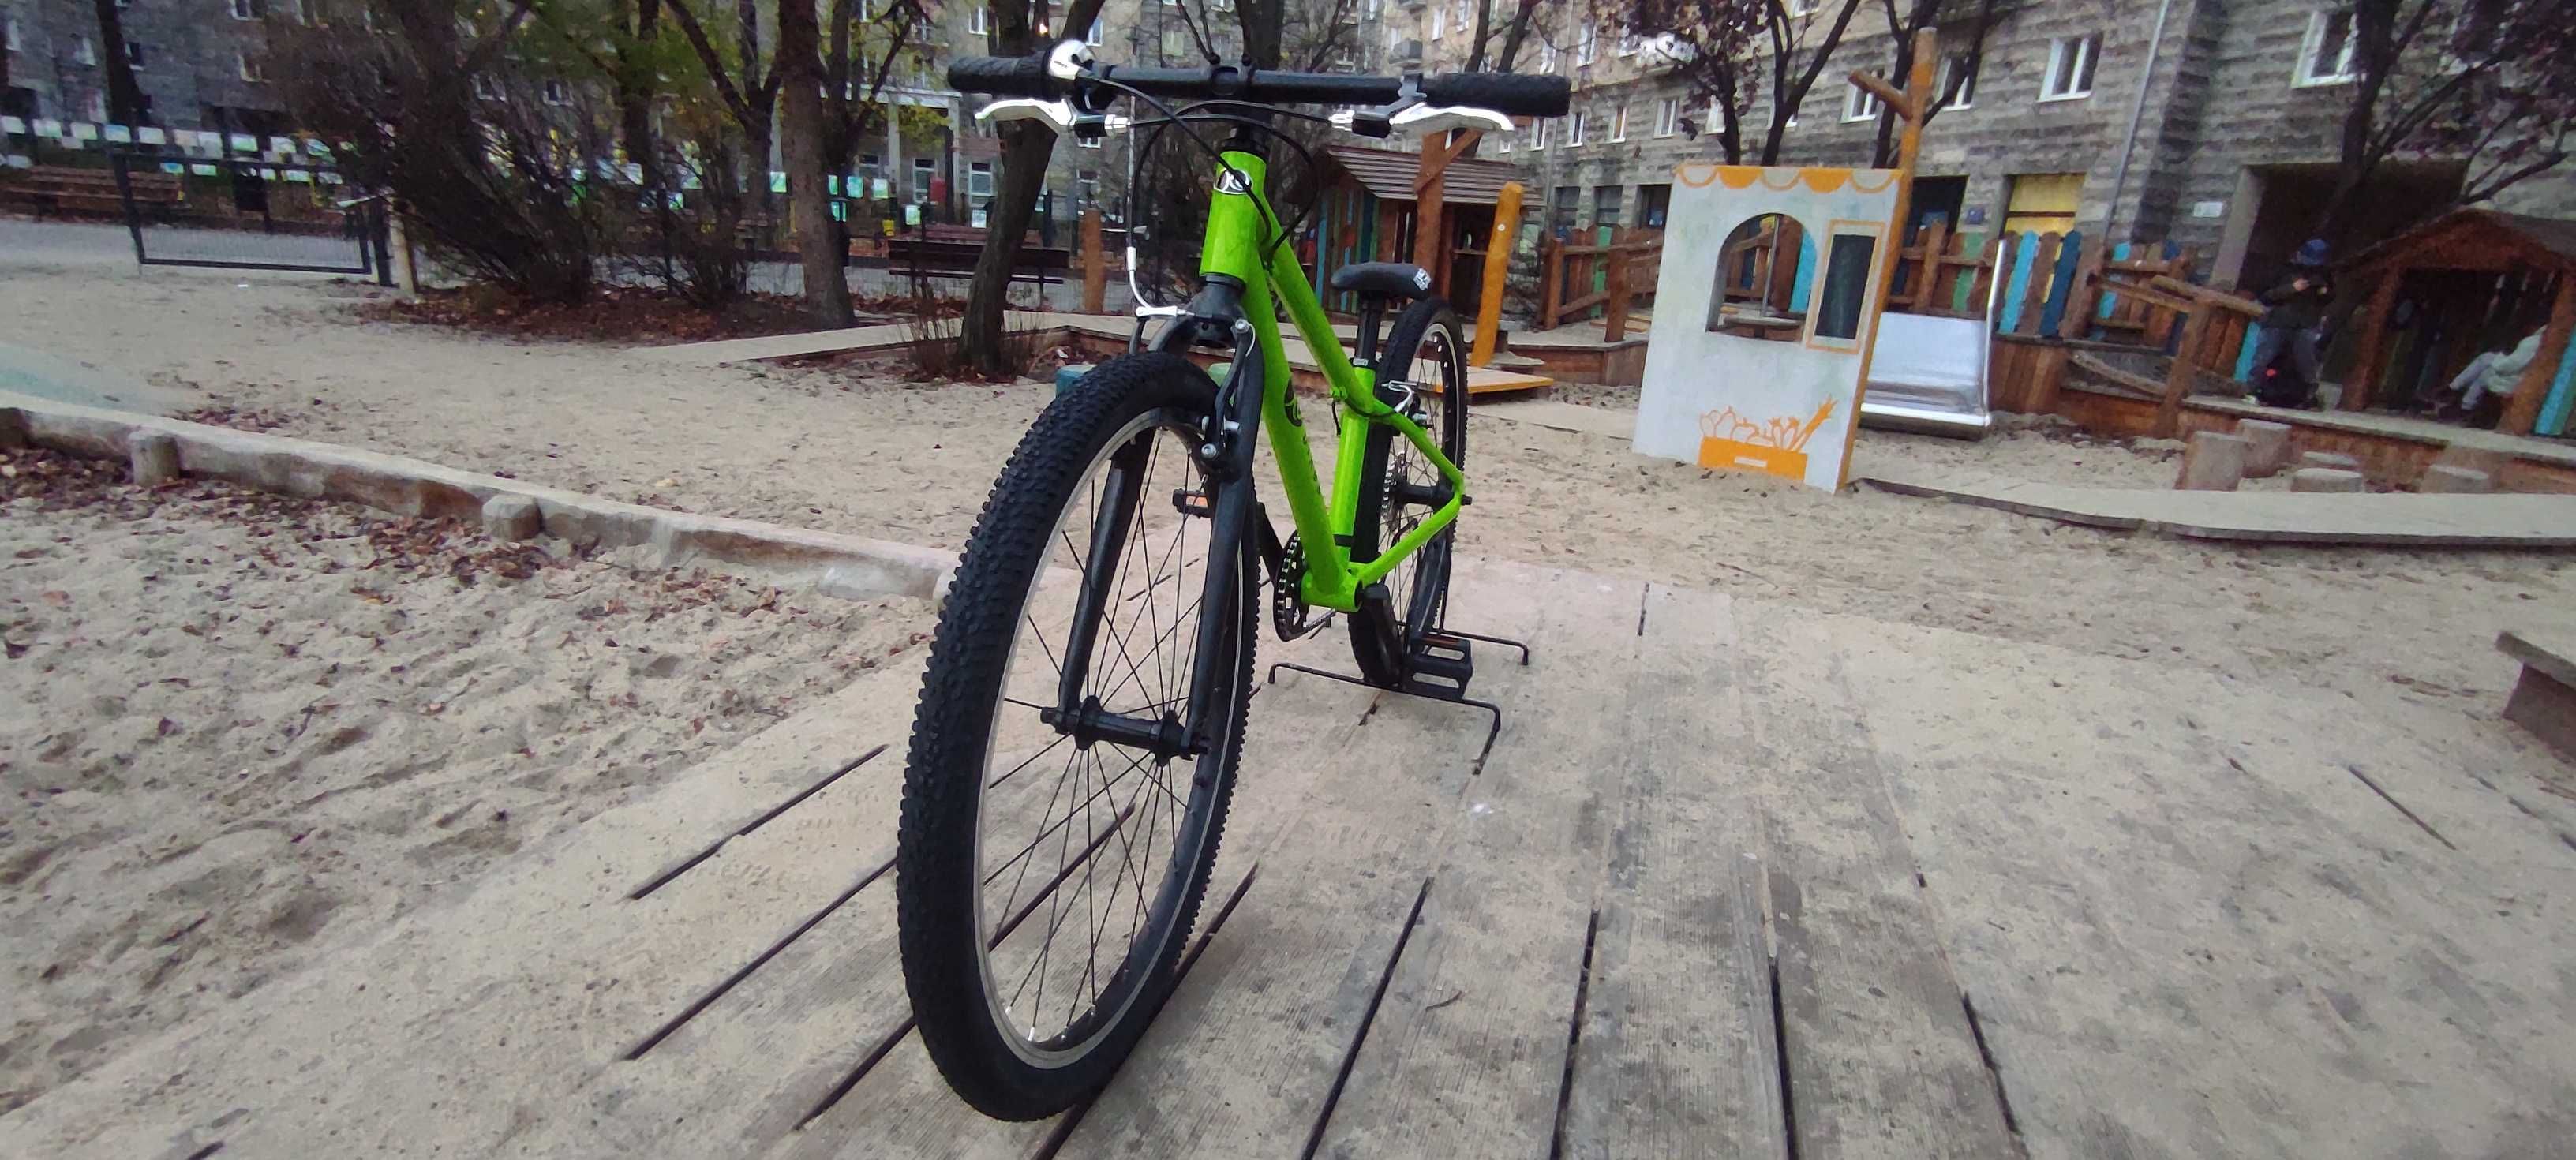 KUbikes 24S - superlekki rower dla dzieci 8,5 KG!!! - bajkids.pl